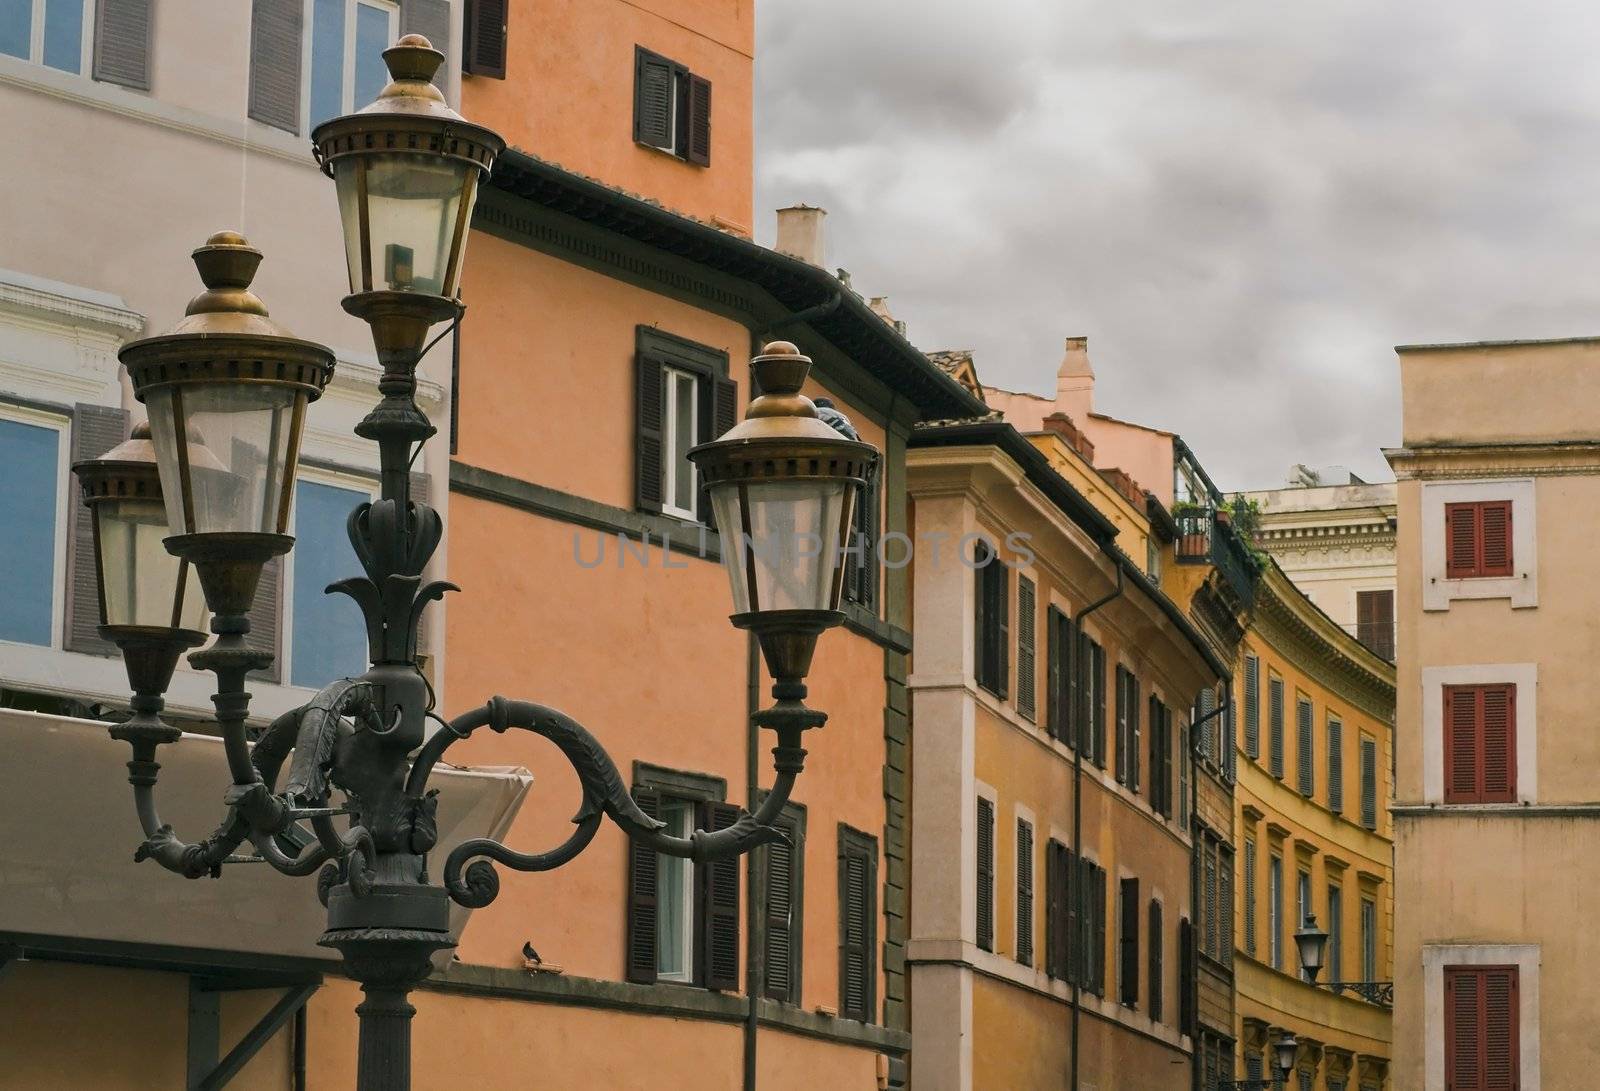 Vintage street lamp in a Roman street